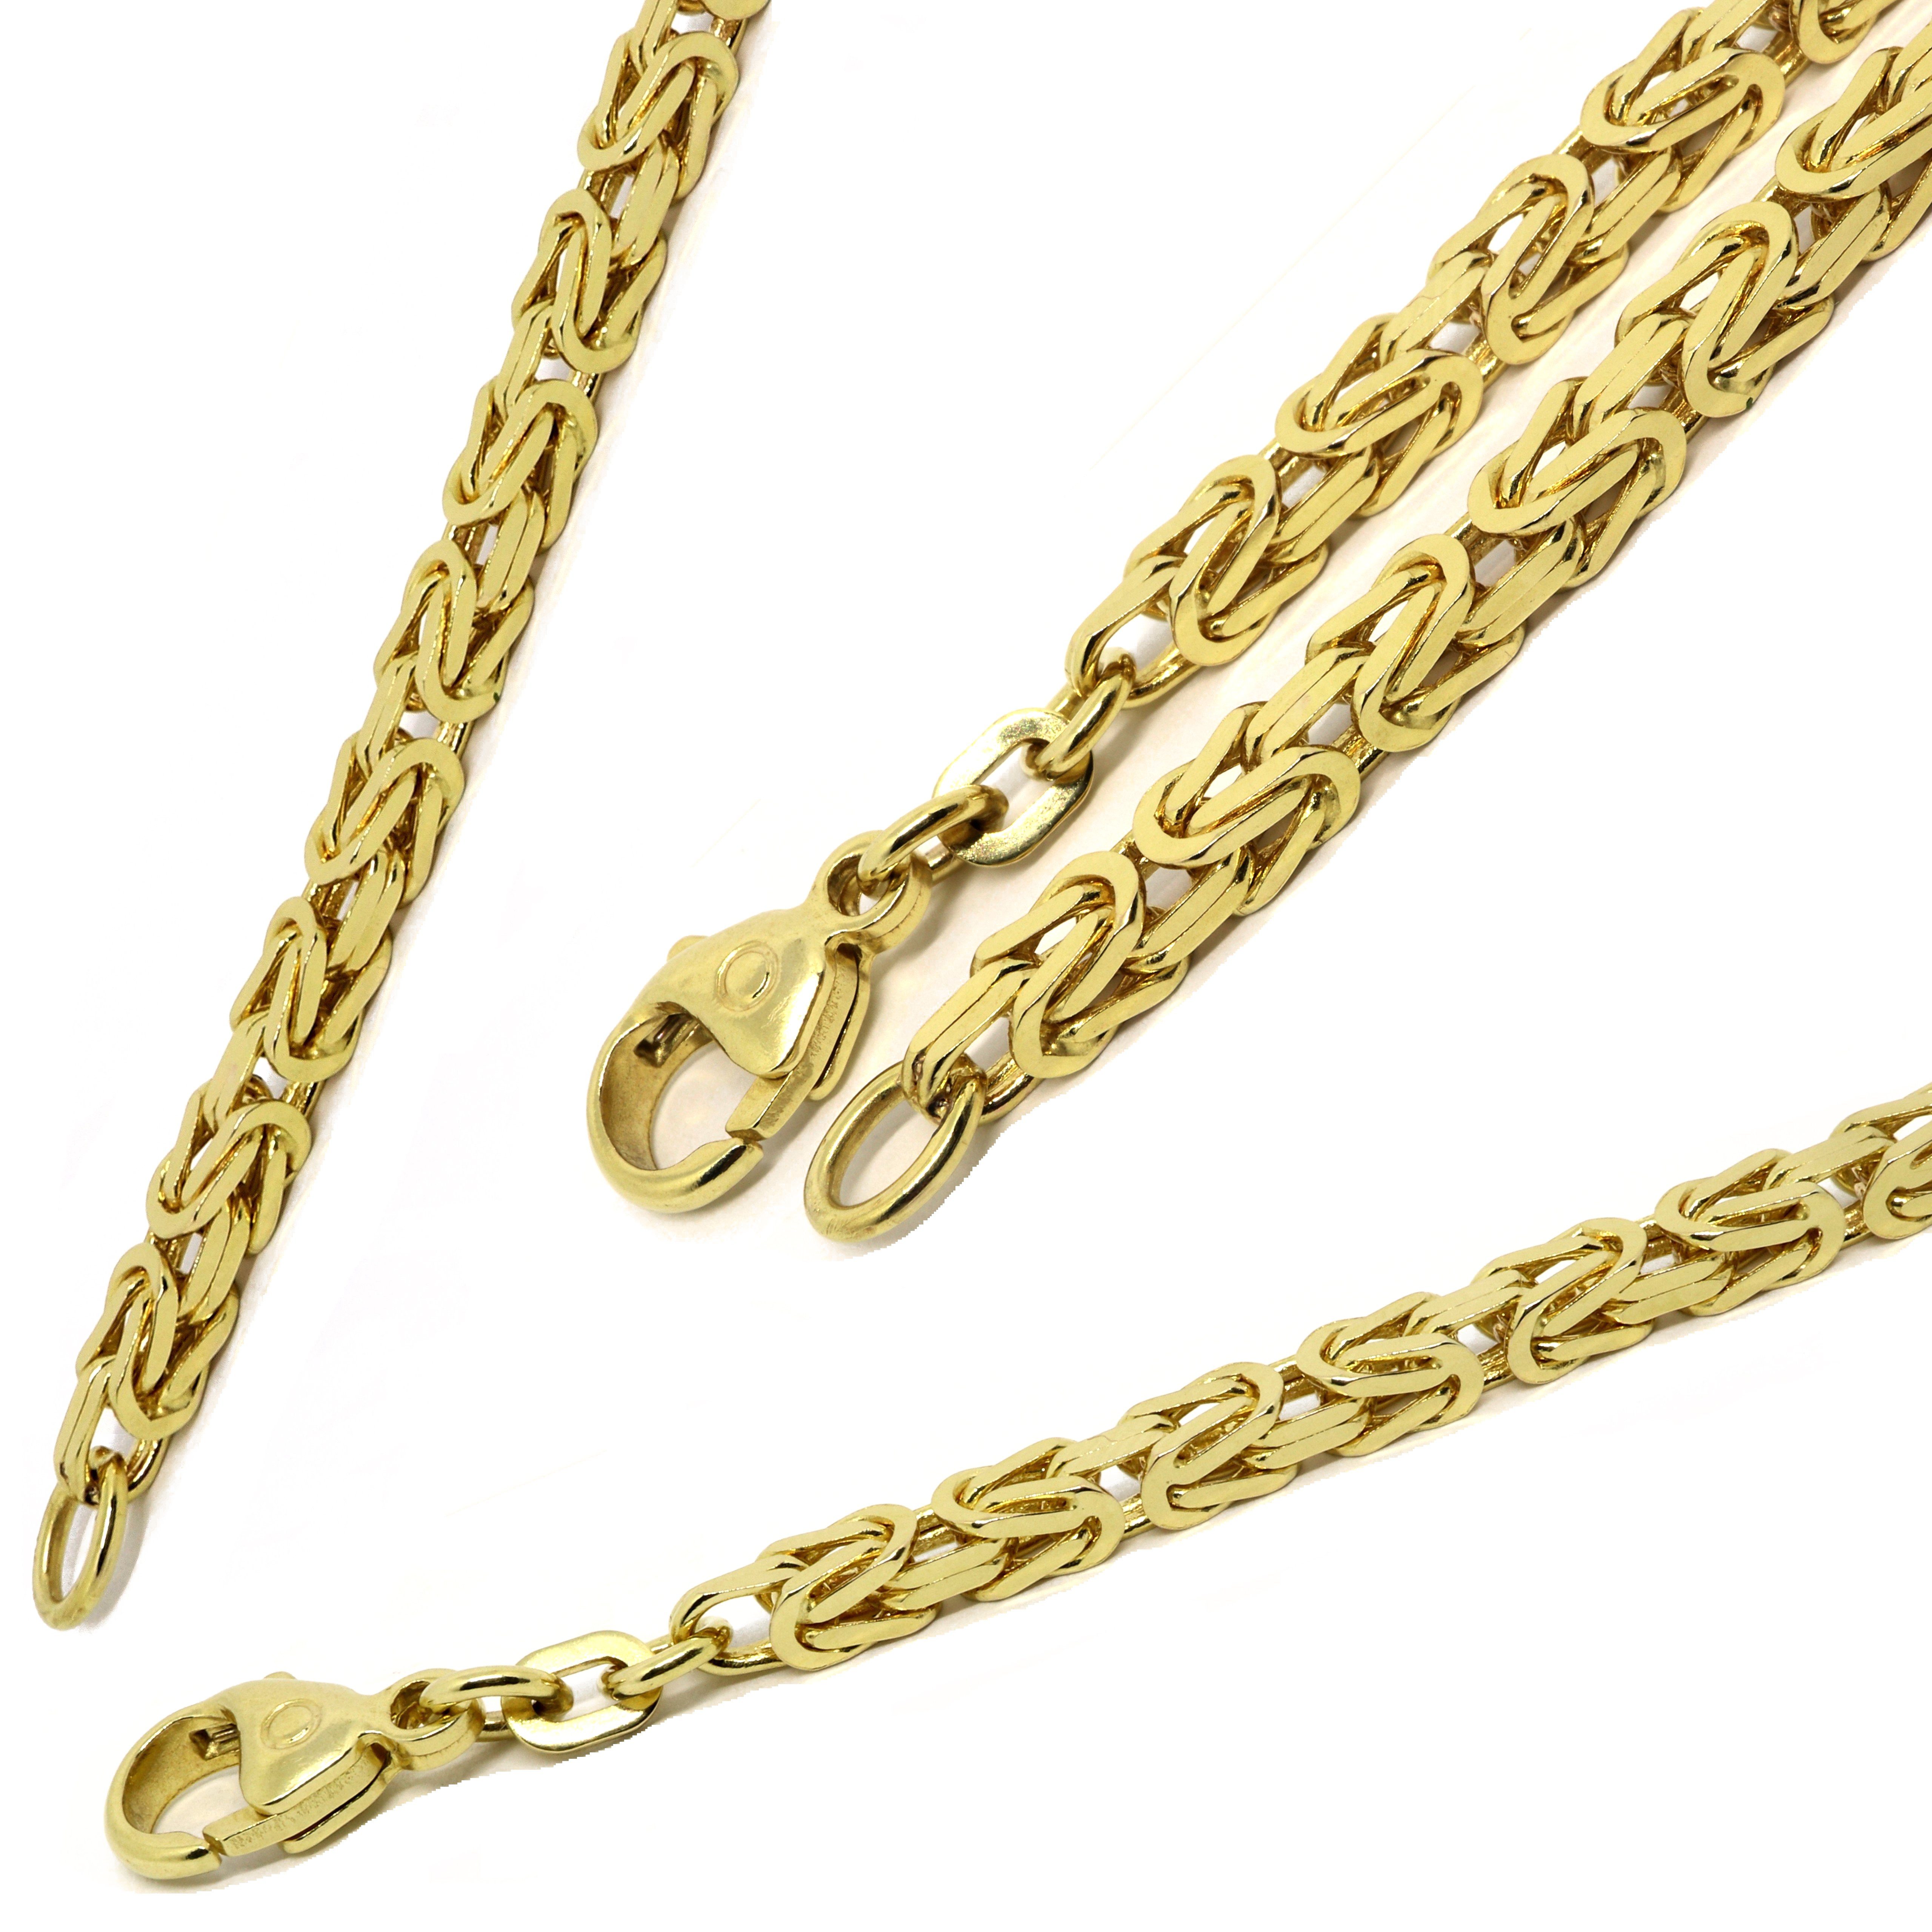 G & J Collier Königskette 585/14K Gold 2,5mm 50-60cm edle hochwertige  Halskette, Made in Germany